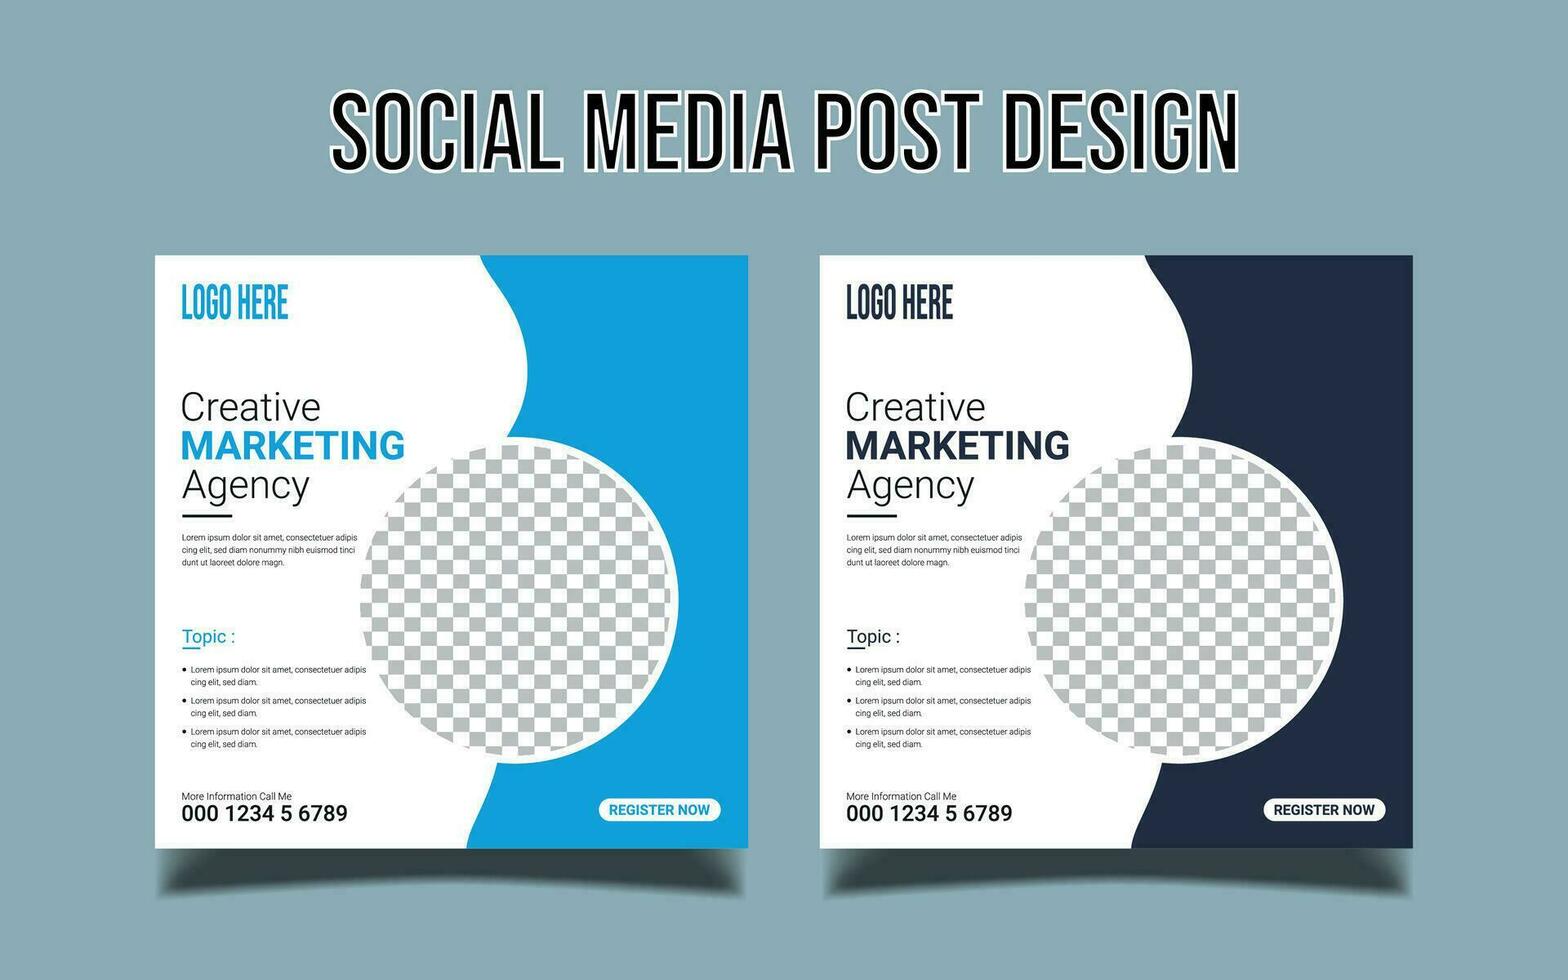 banner de marketing de negócios digitais para modelo de postagem de mídia social vetor